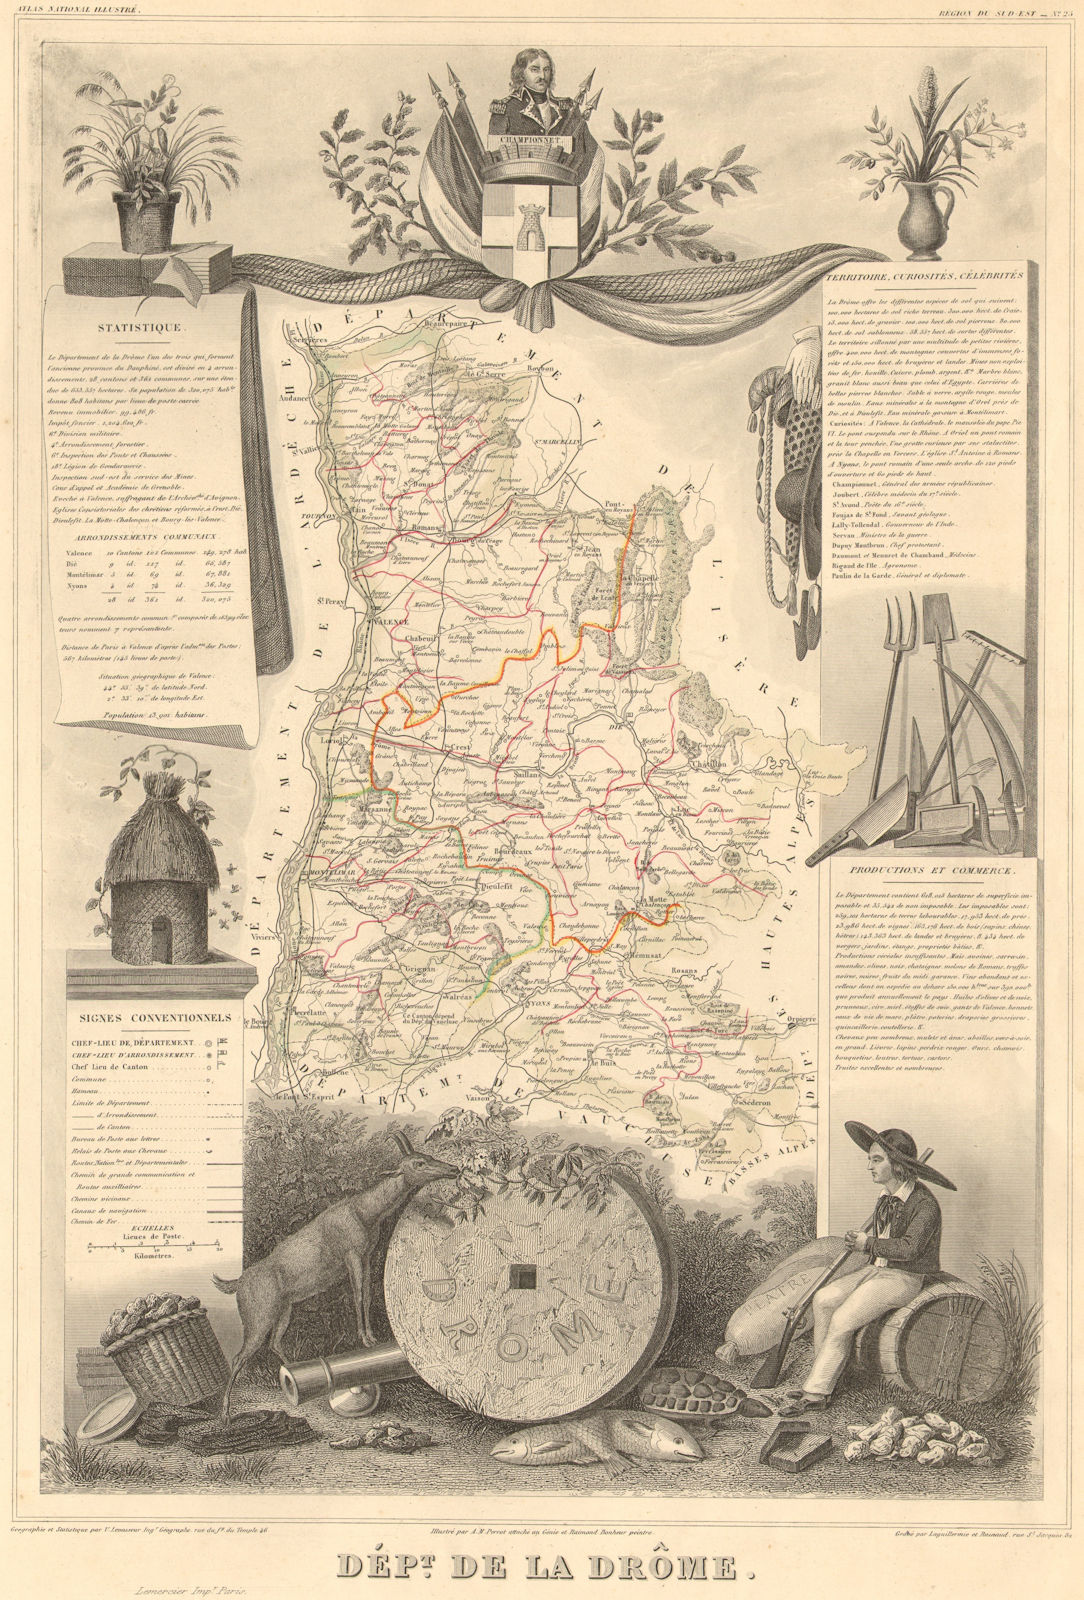 Associate Product Département de la DRÔME. Decorative antique map/carte by Victor LEVASSEUR 1852